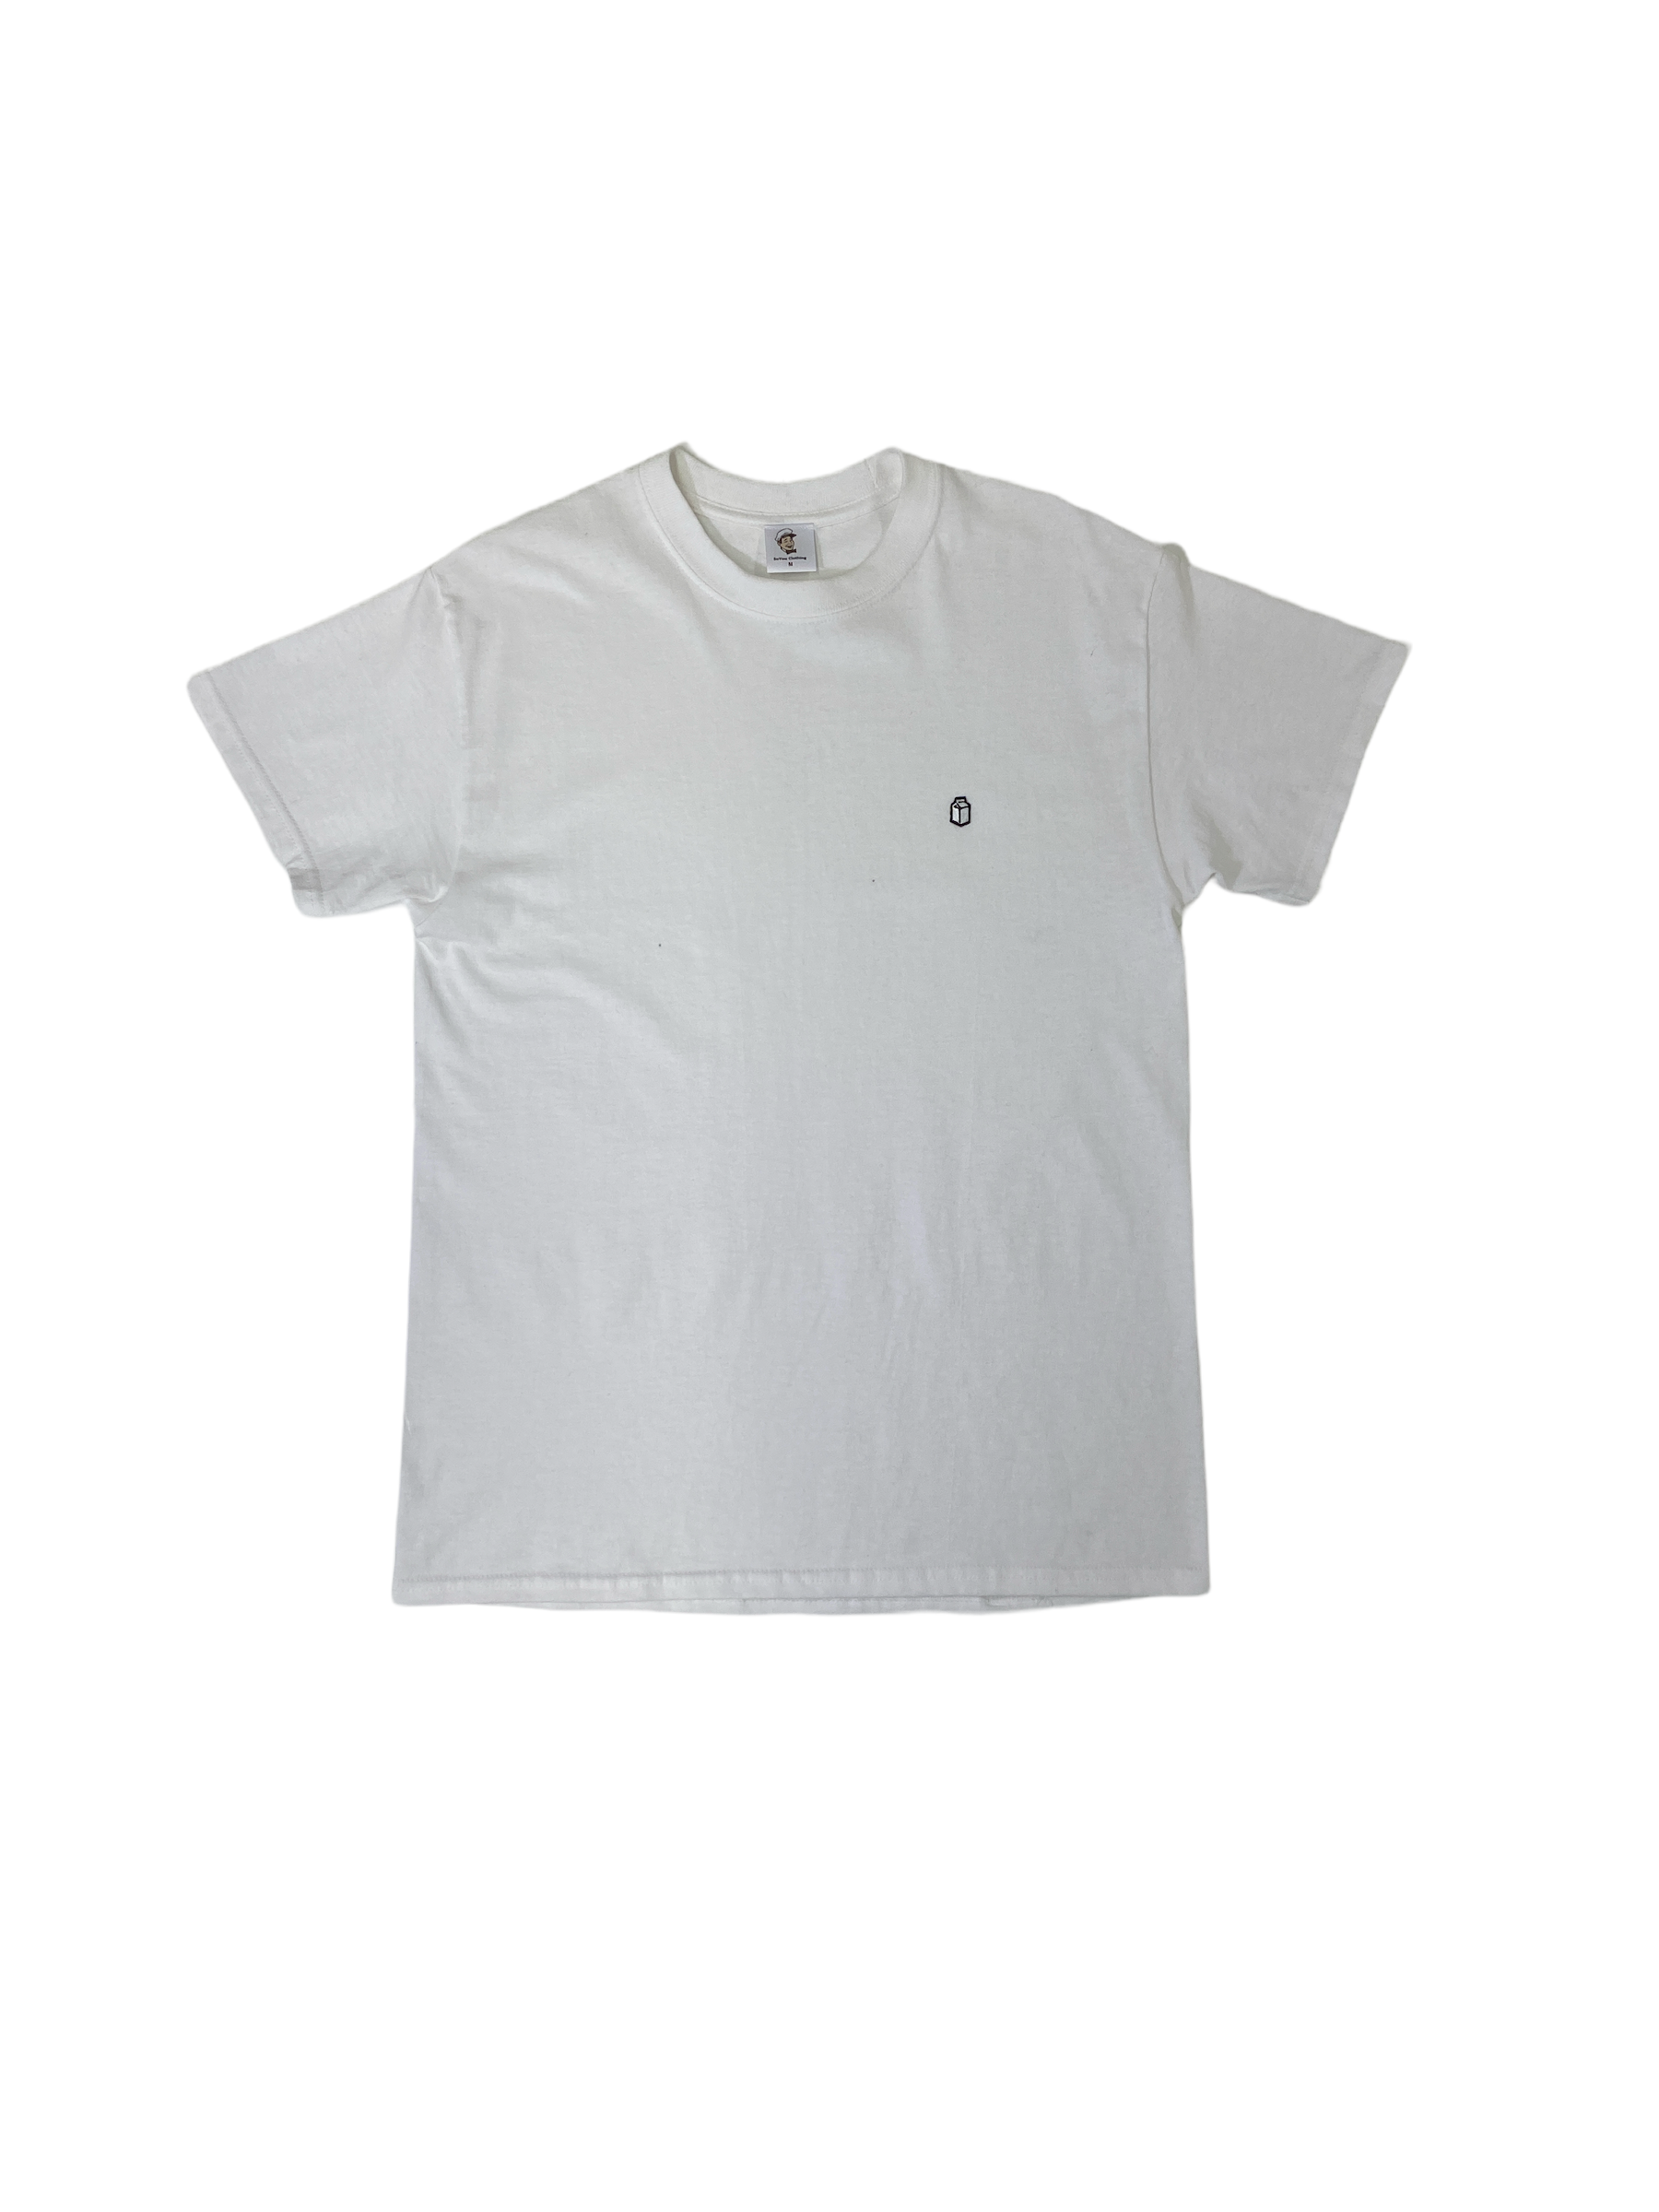 SoYou Basics (T-Shirts)-SoYou Clothing